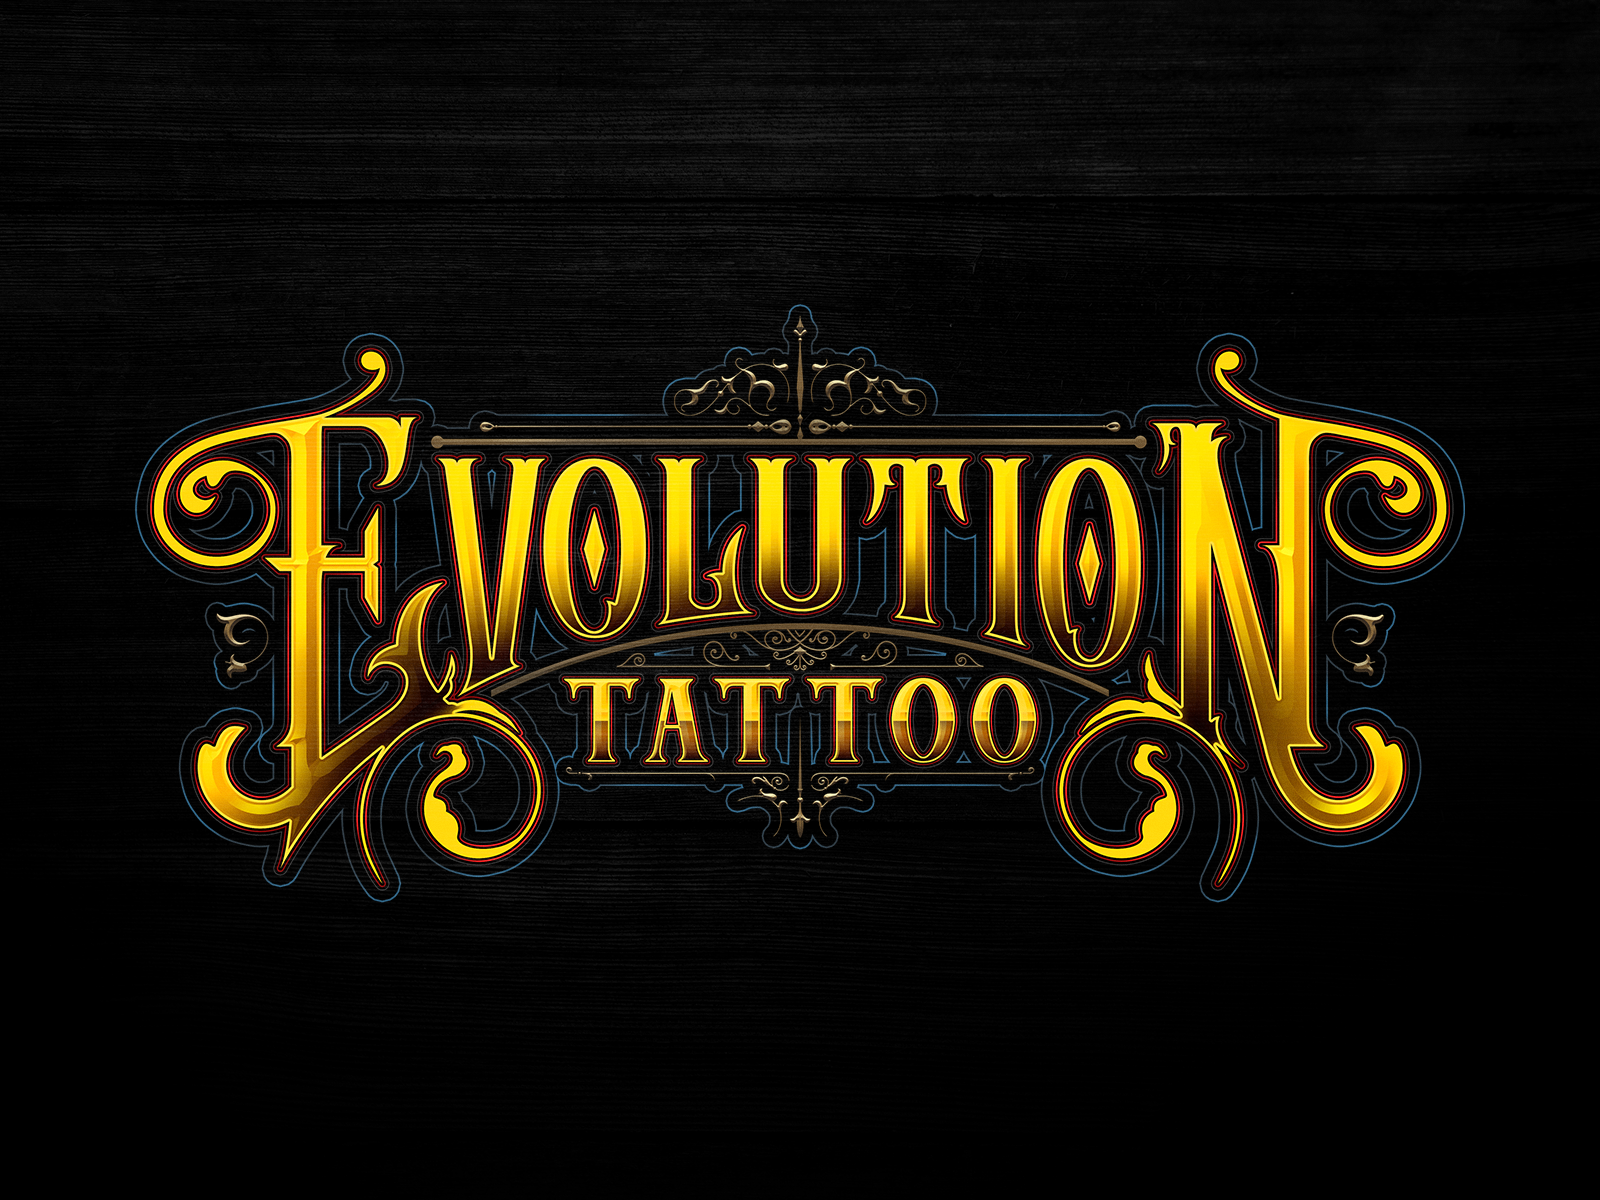 Tattoo Shop in Reno  Reno Tattoo Studio  Artist Gallery  Tattoo studio  Tattoo shop Tattoos